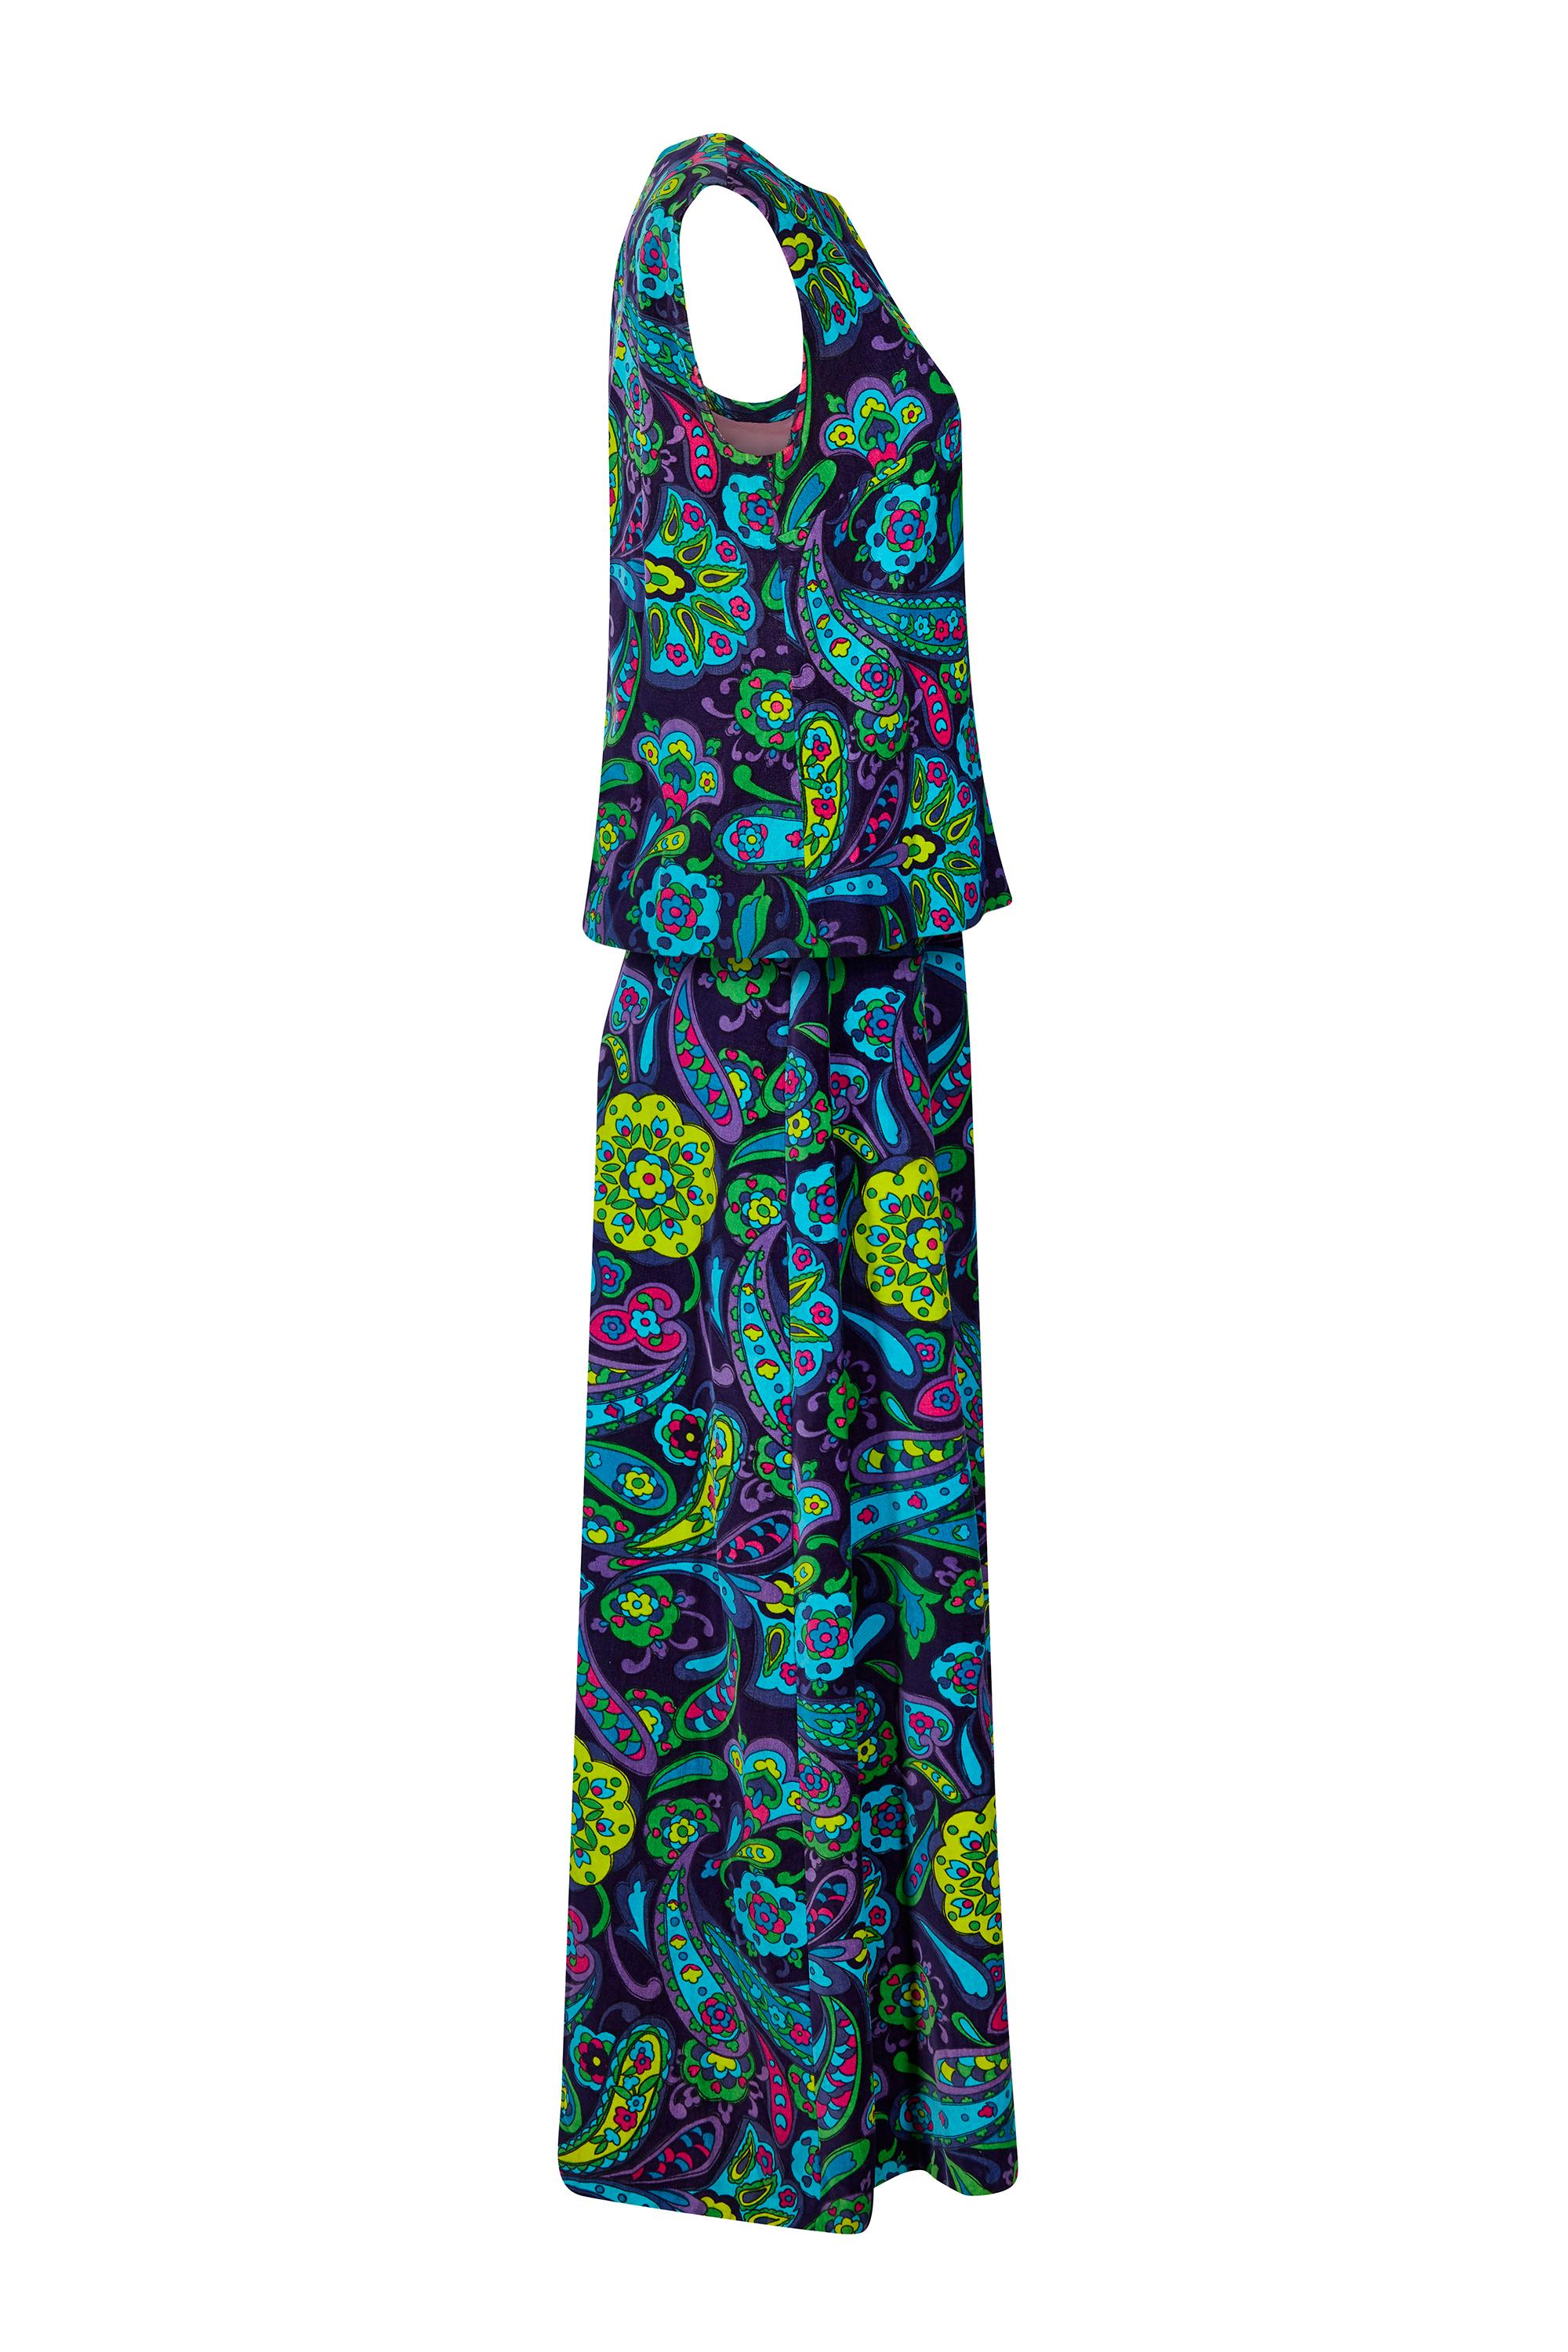 Cet ensemble vibrant en velours de coton des années 1960 se compose d'une jupe longue à la cheville et d'un haut sans manches à l'imprimé psychédélique flamboyant en paisley fuchsia, turquoise, vert lime et lilas sur un fond indigo profond.